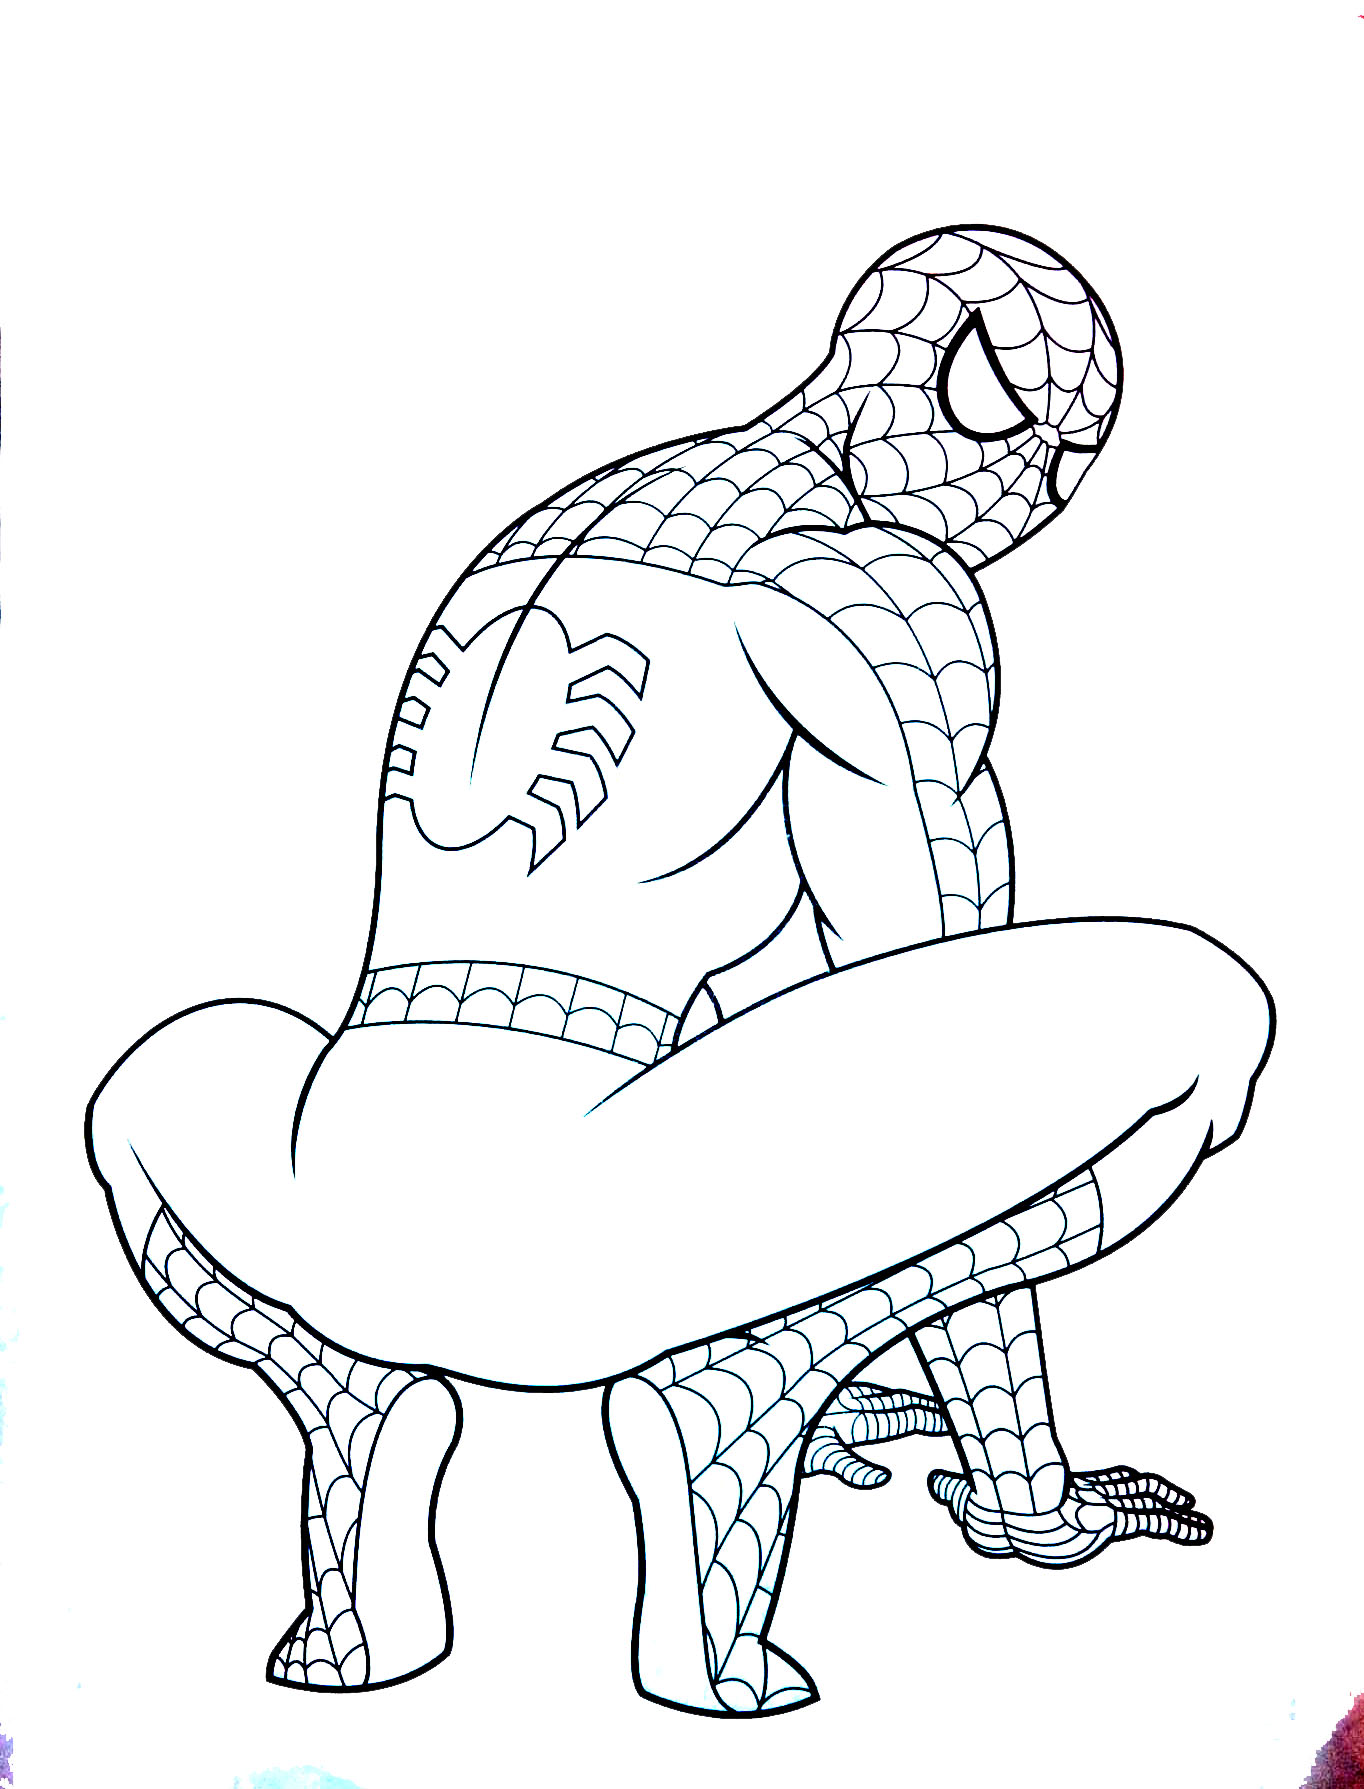 Imagem do Homem-Aranha para colorir fácil para crianças